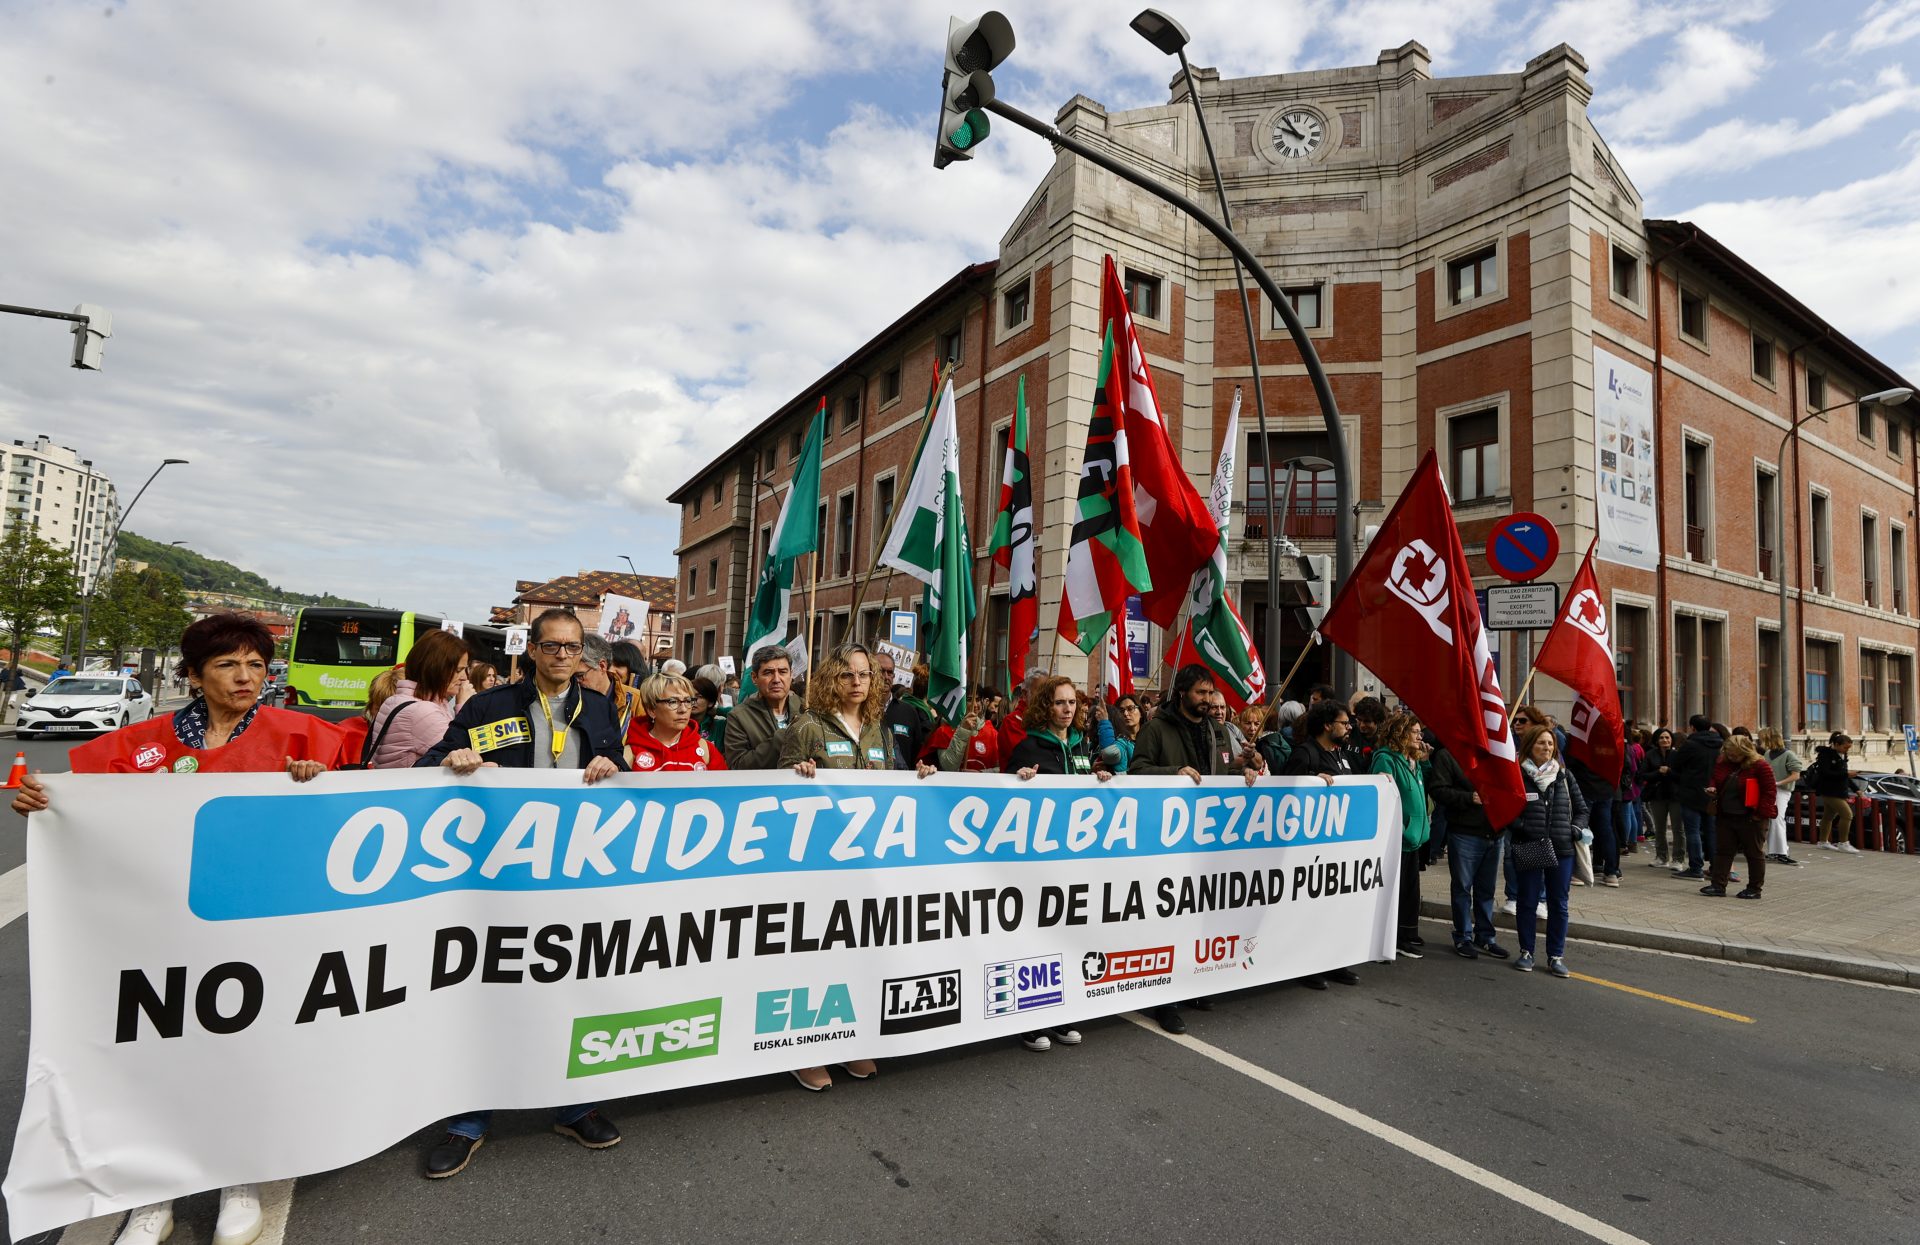 Los sindicatos SATSE, ELA, LAB, SME, CCOO y UGT, recorren las calles de Bilbao, durante las movilizaciones convocada para este jueves y el viernes dos jornadas de huelga en toda Osakidetza, así como diversas movilizaciones ante hospitales y ambulatorios, para denunciar el "desmantelamiento" de la sanidad pública.EFE/Luis Tejido